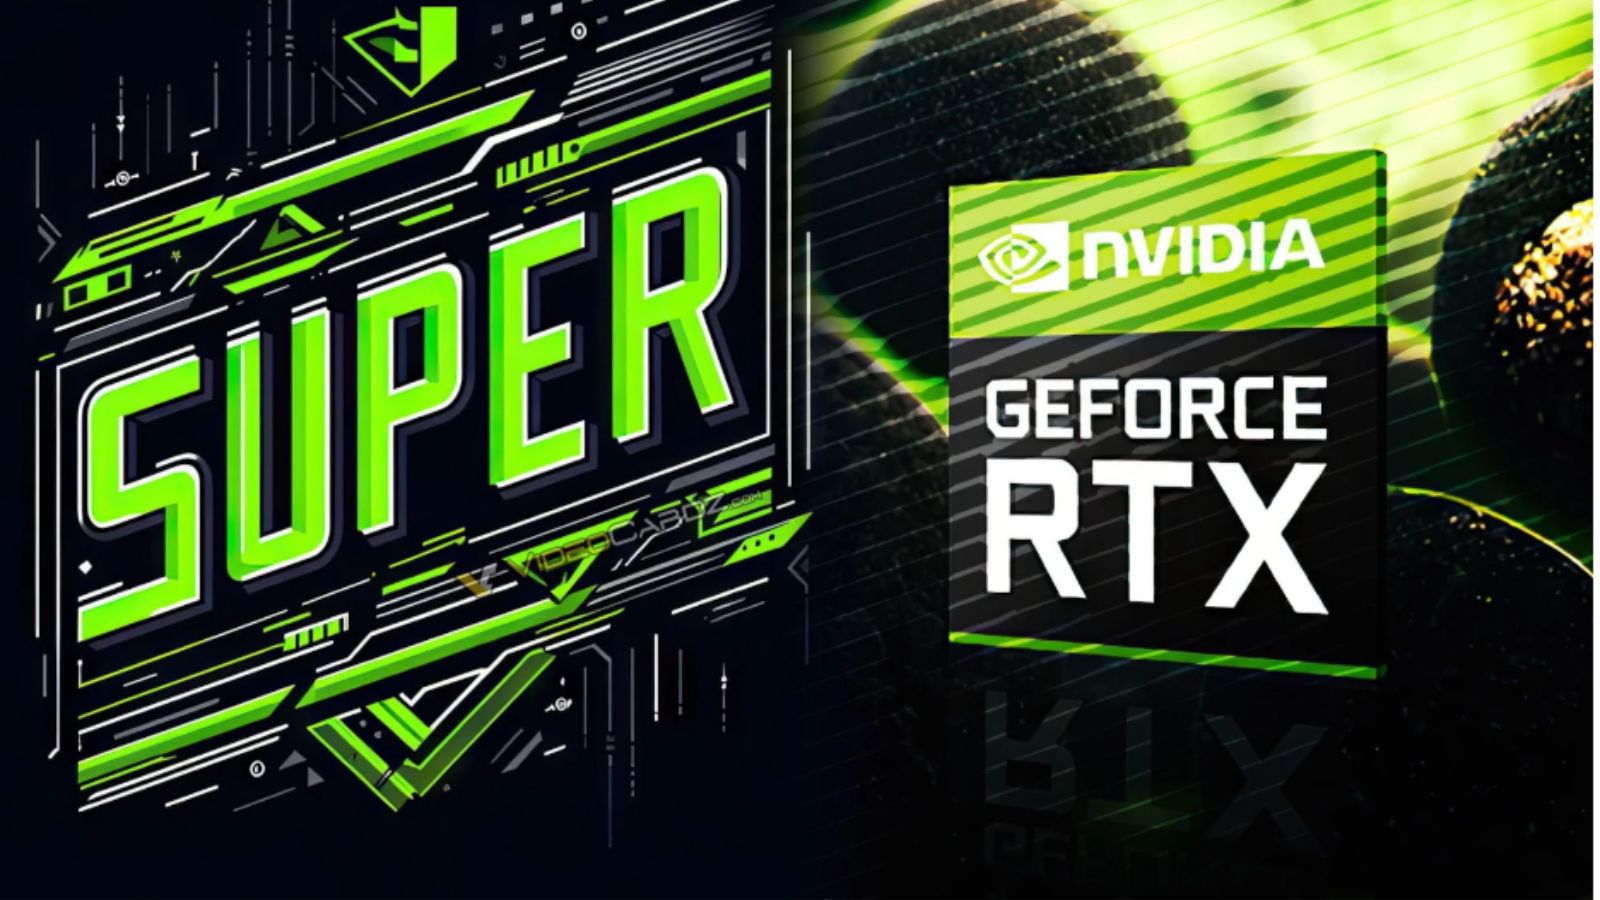 NVIDIA RTX SUPER, novita per il gaming di fascia alta